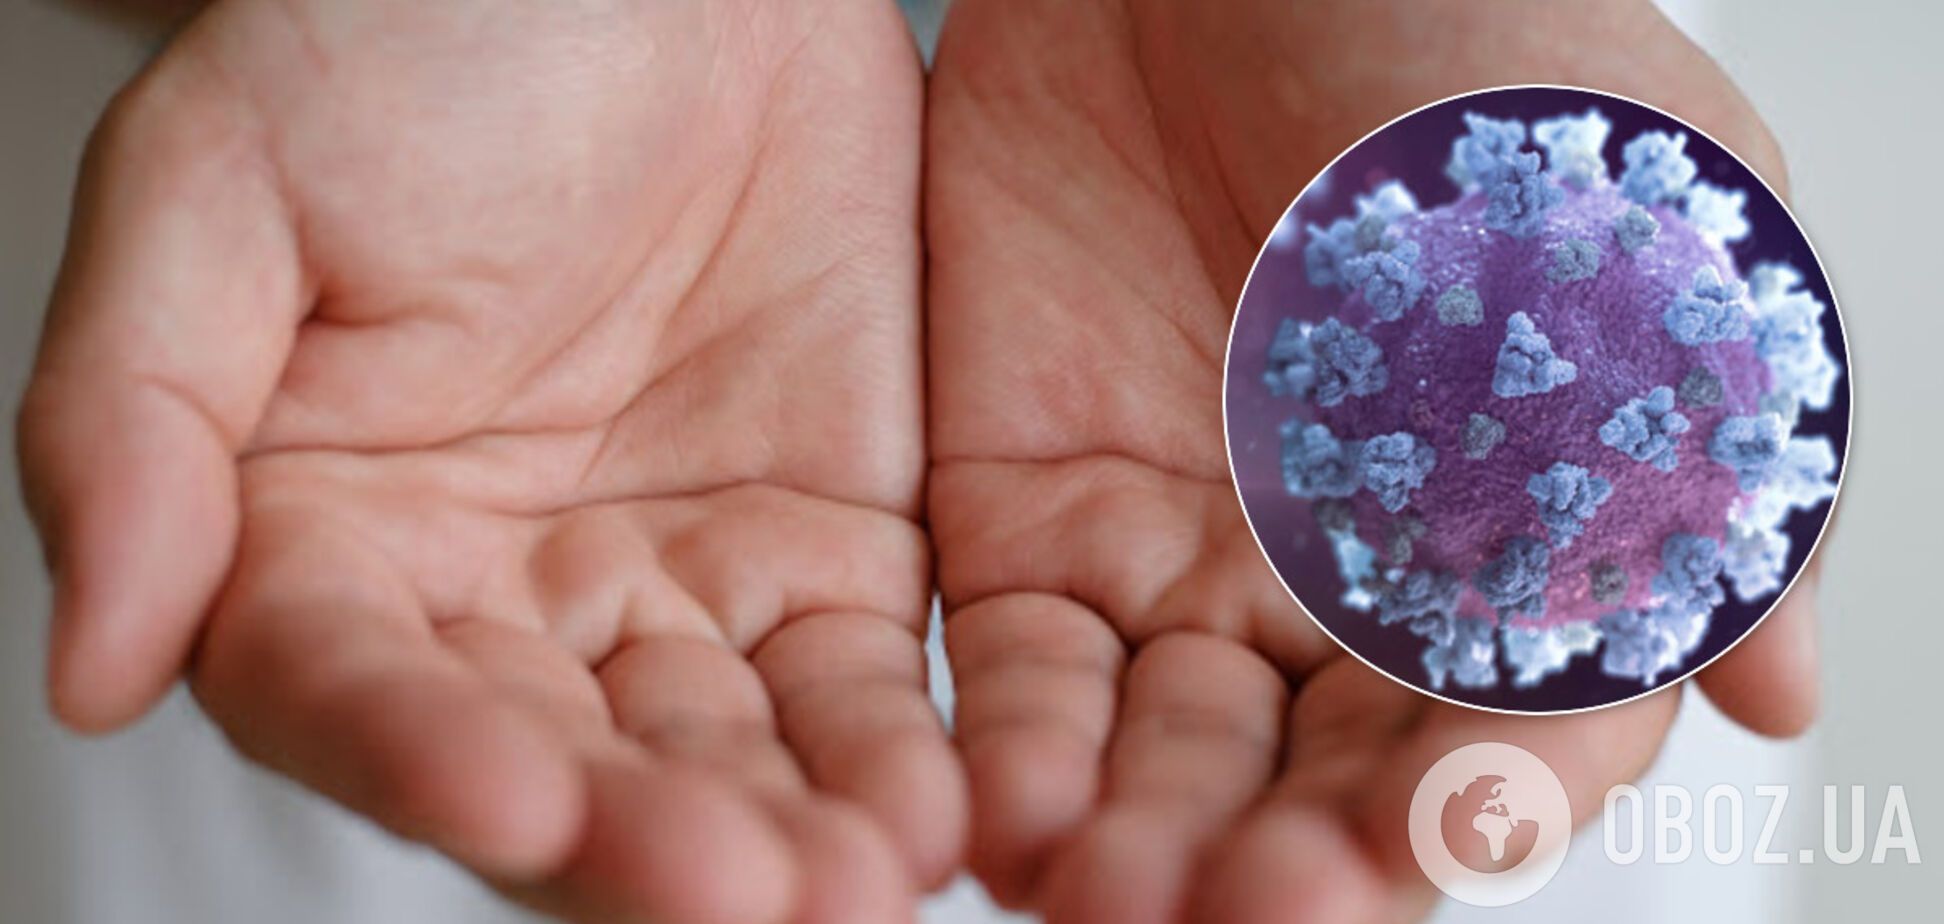 Мило знищує коронавірус: вчені вказали на важливість миття рук